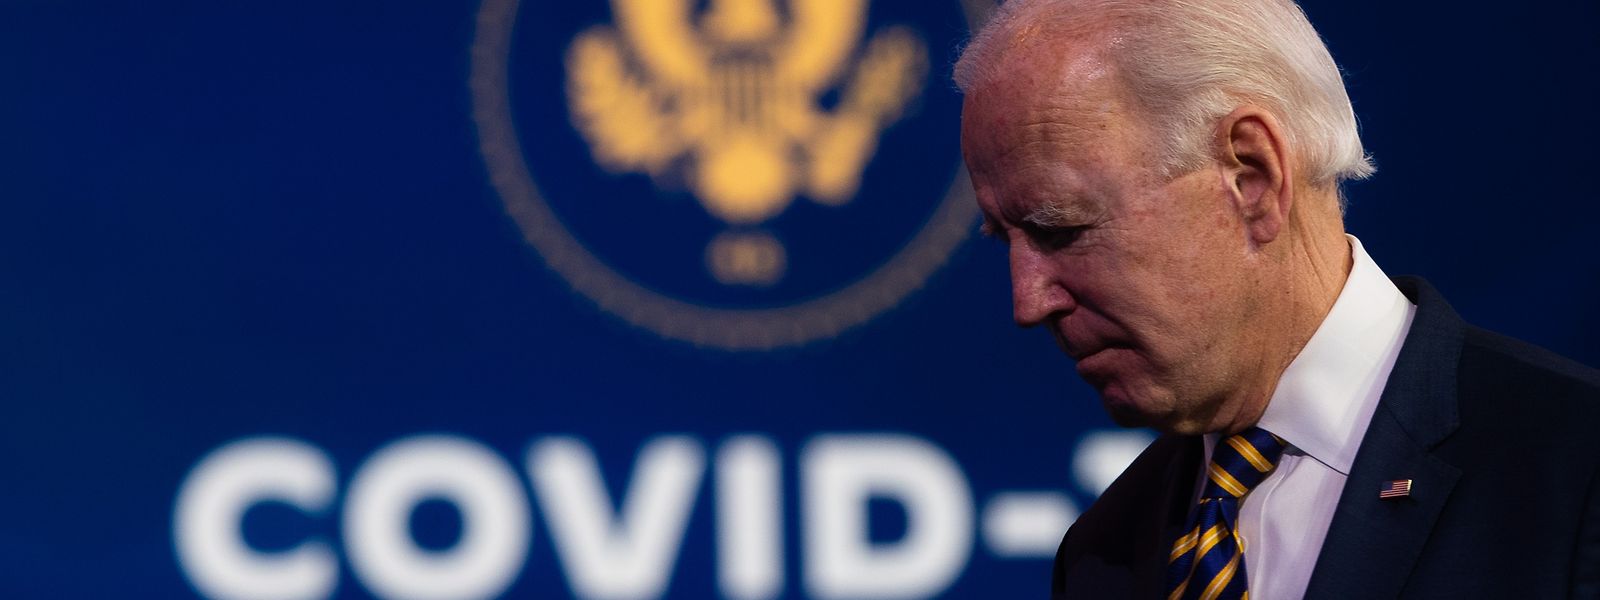 Der gewählte US-Präsident Joe Biden (oben) schwört das Land auf harte Zeiten ein, um die Corona-Krise zu bewältigen.